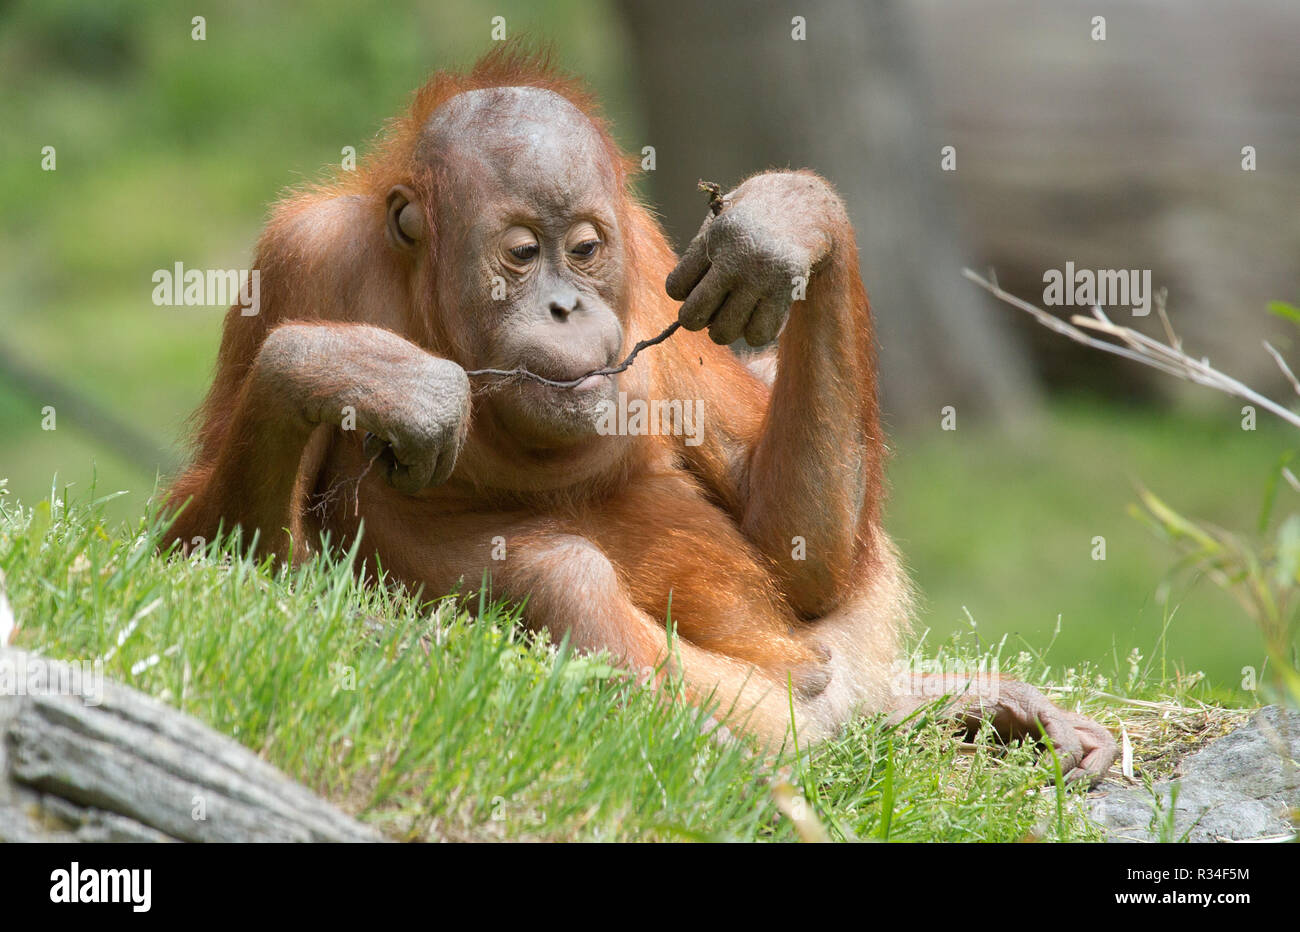 playing orang utan child Stock Photo